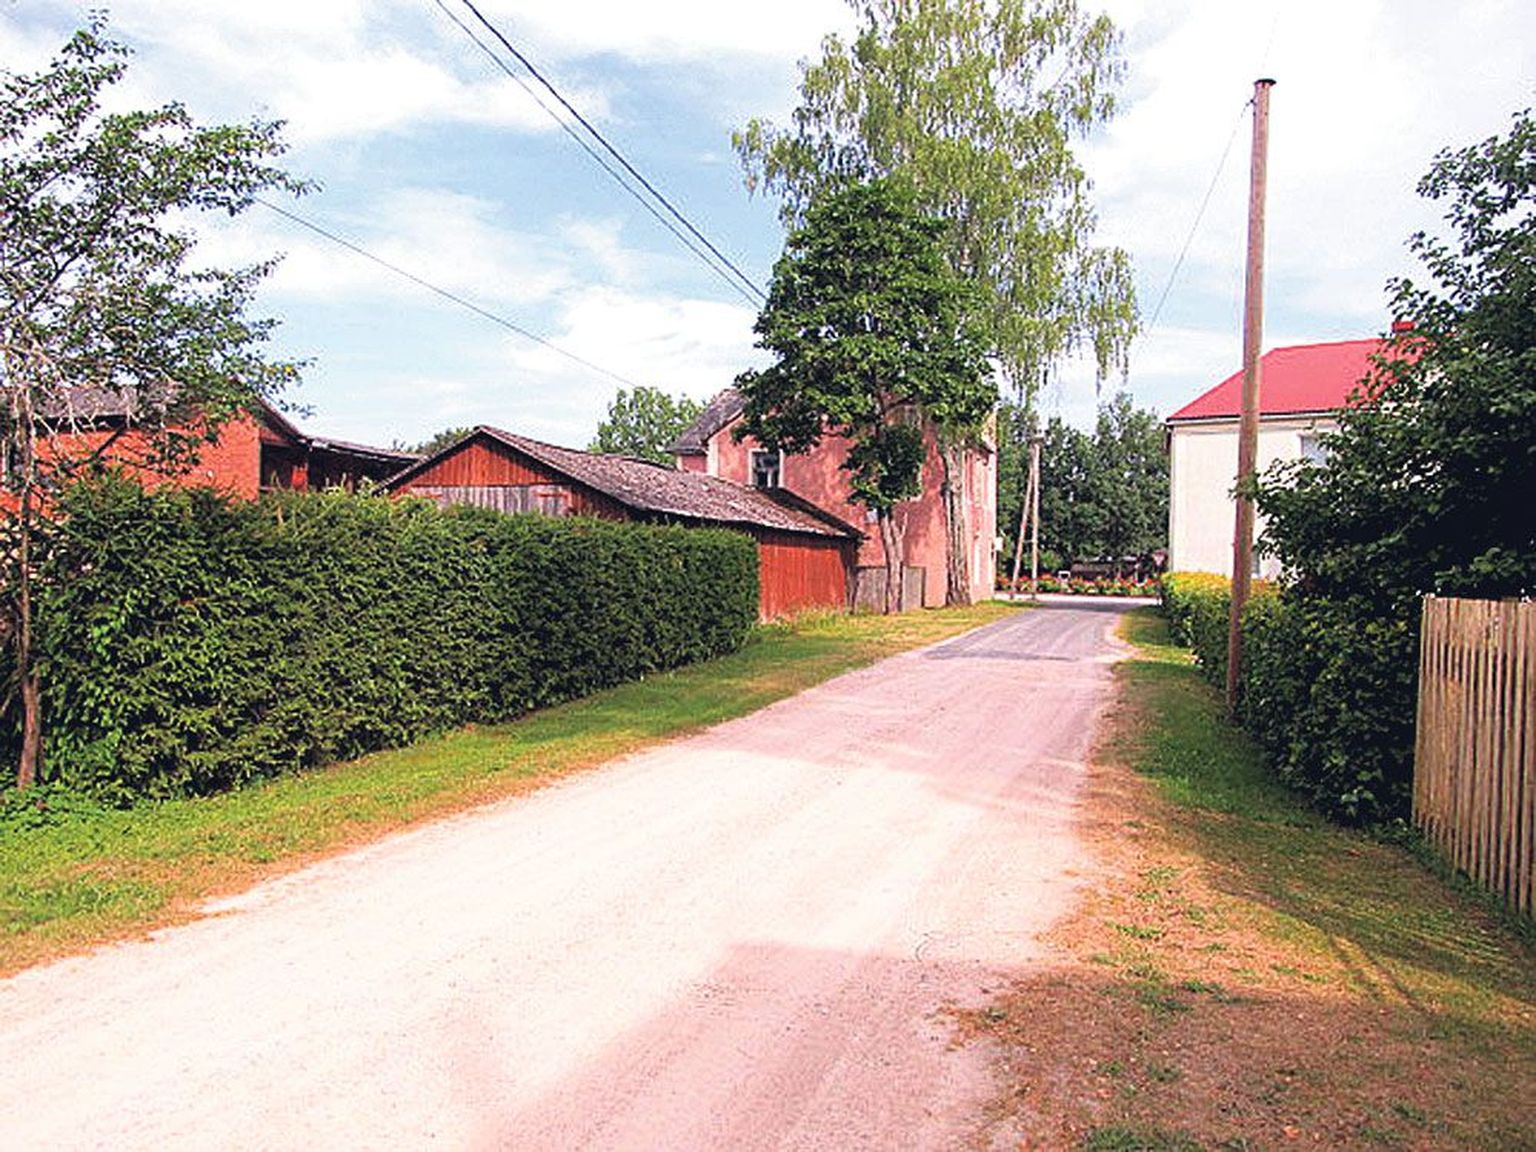 Mõisaküla (läti keeles Meizakila) Riia tänava ühes otsas asuvad suur elumaja (vasakul) ja linnavalitsuse hoone.